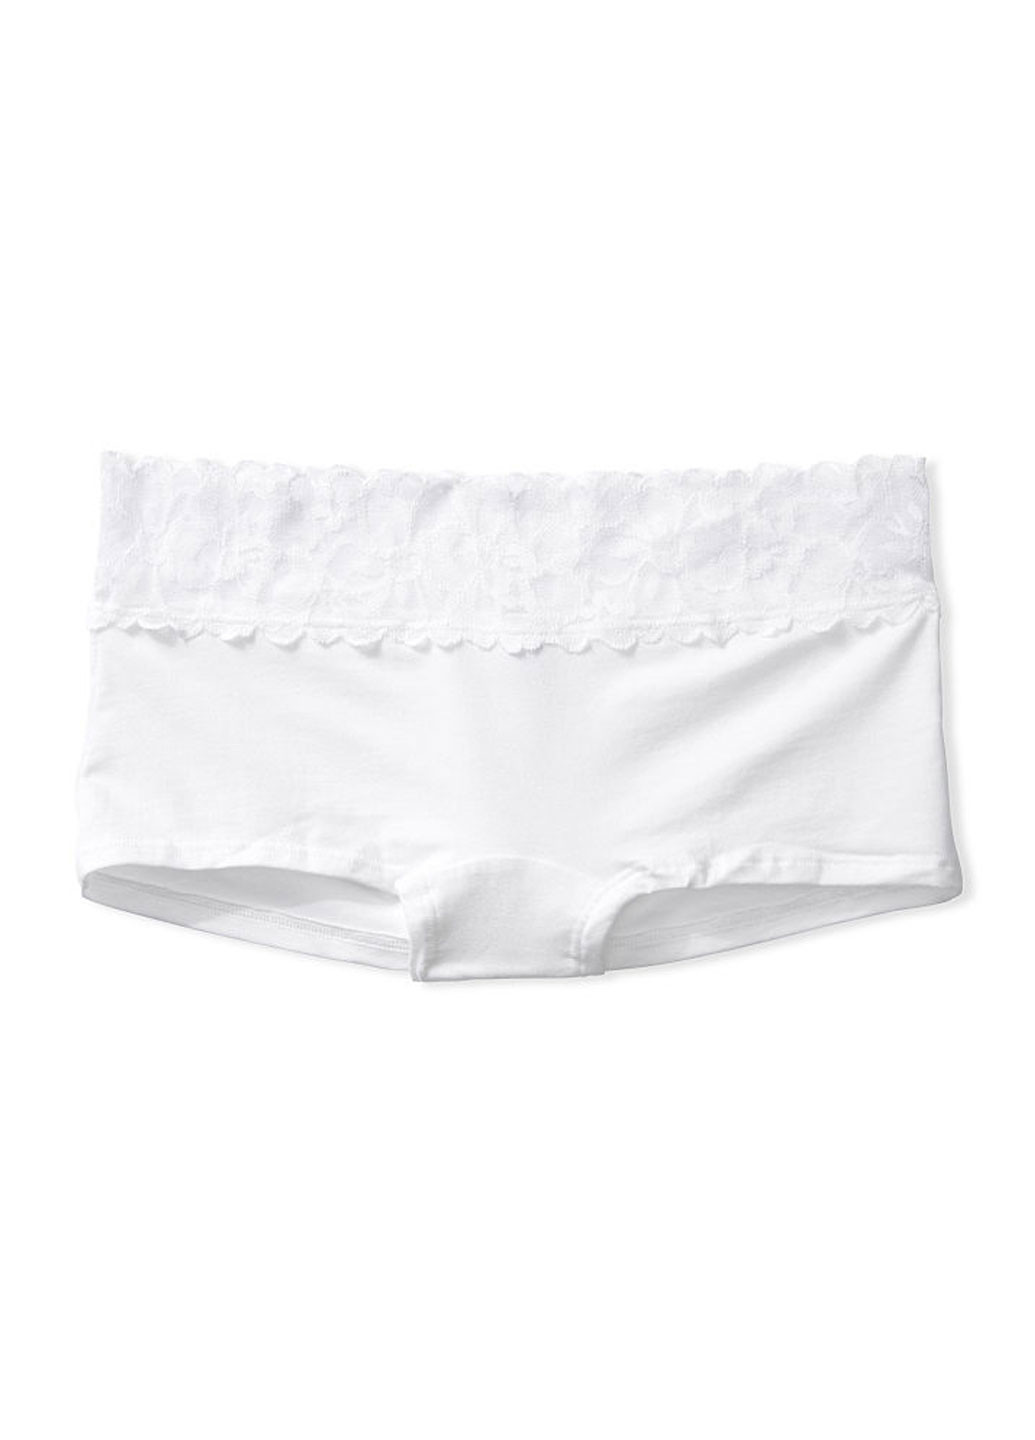 Трусы Victoria's Secret трусики-шорты однотонные белые повседневные хлопок